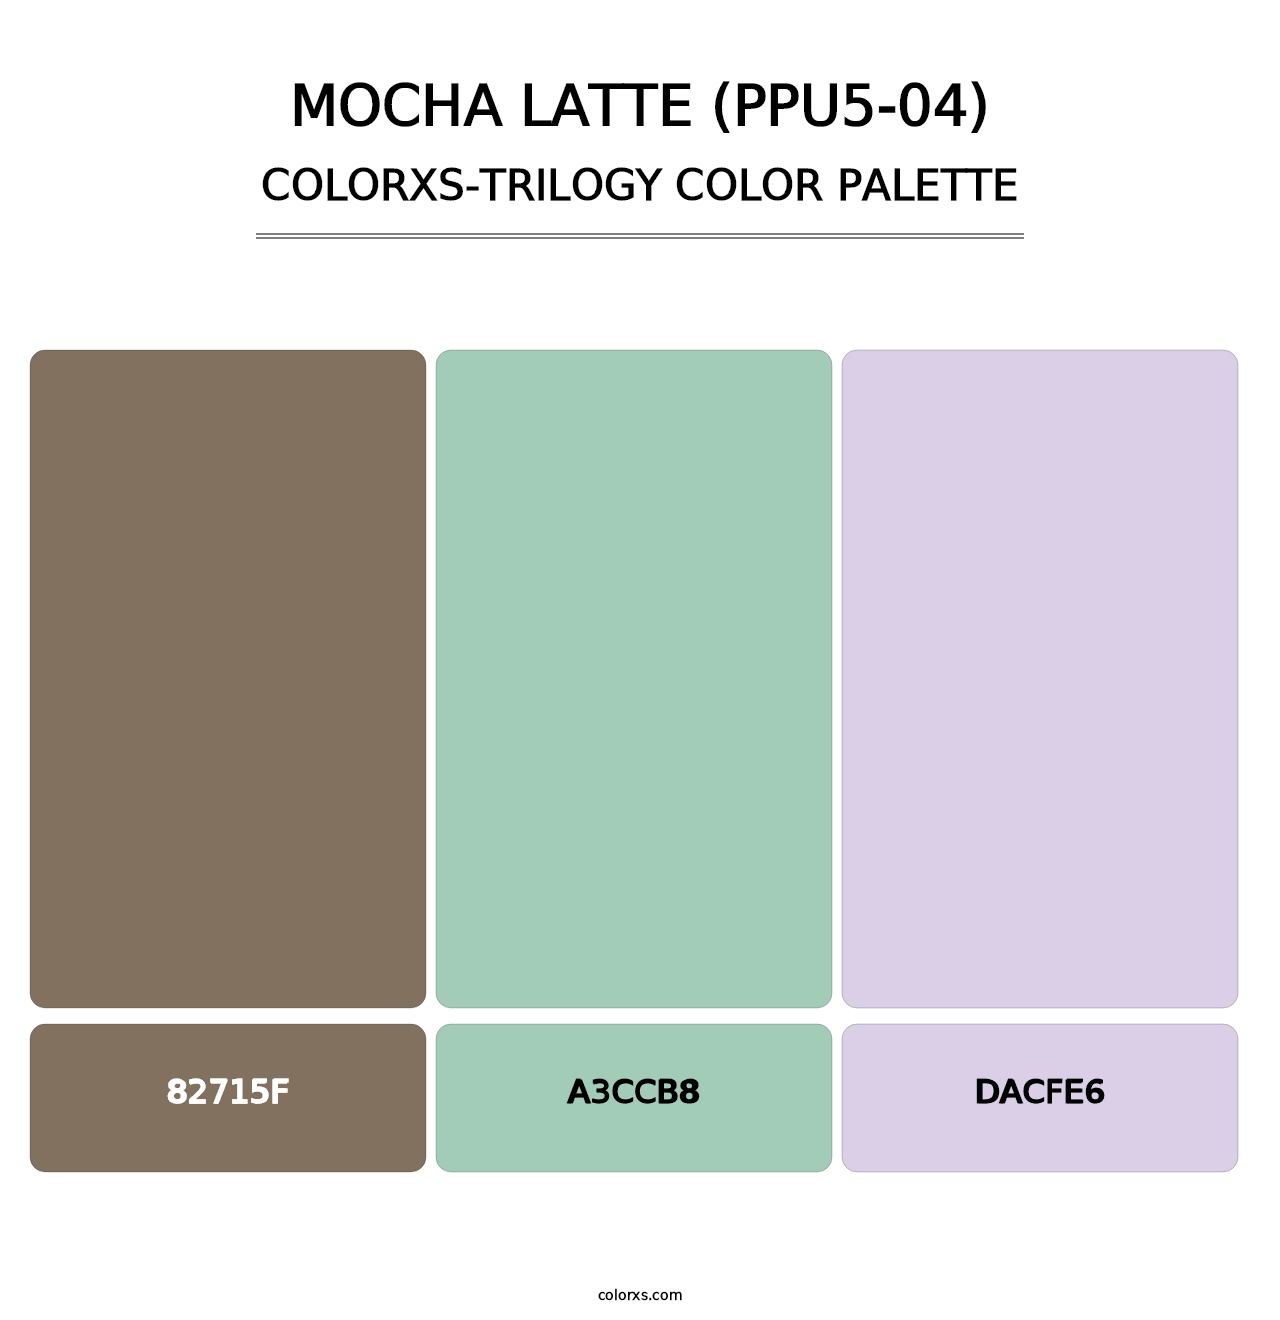 Mocha Latte (PPU5-04) - Colorxs Trilogy Palette